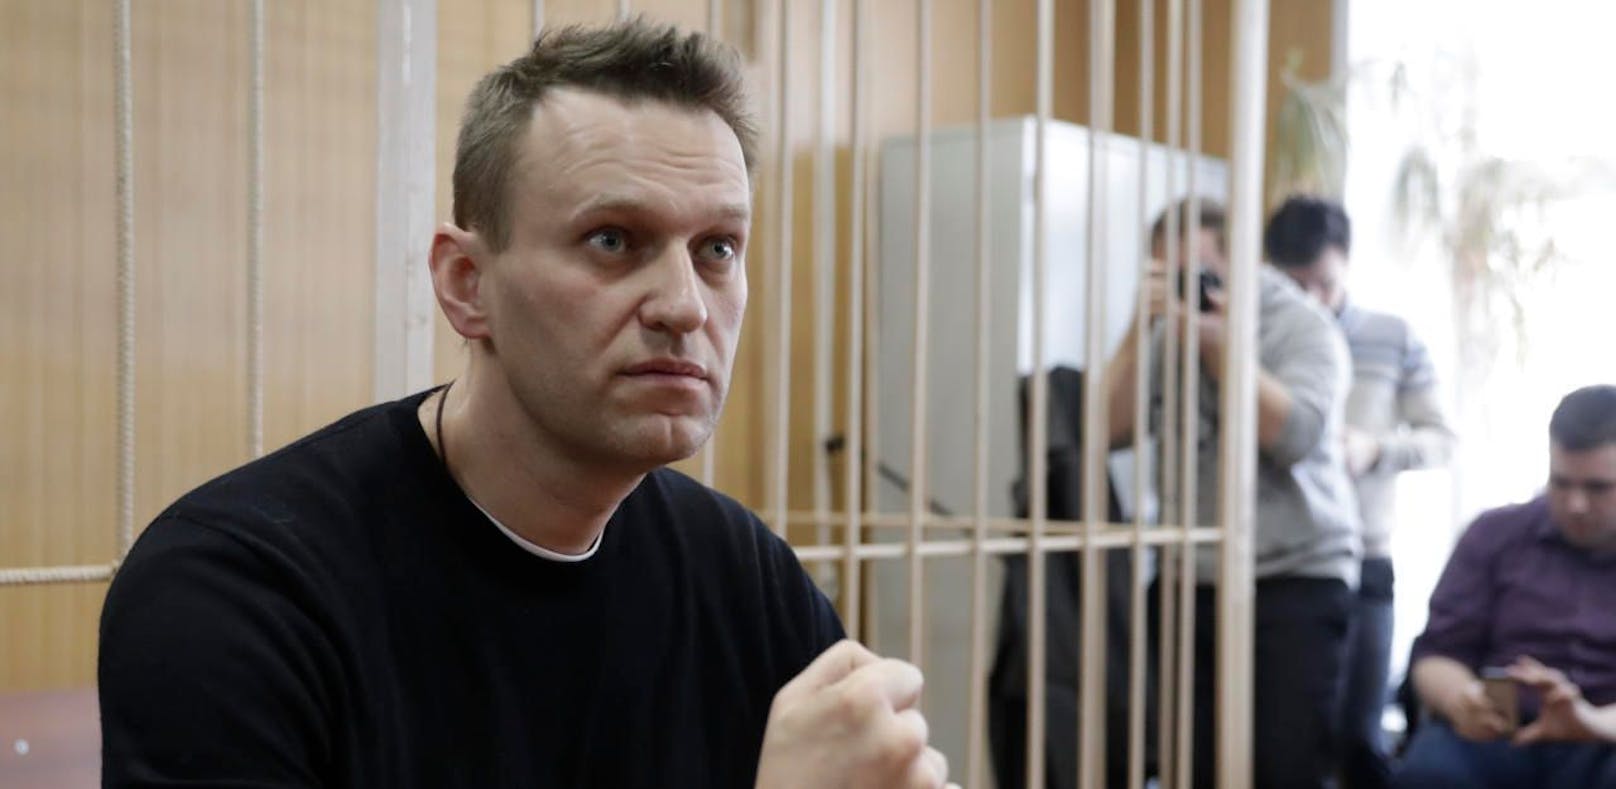 Putin-Gegner Alexej Nawalny festgenommen